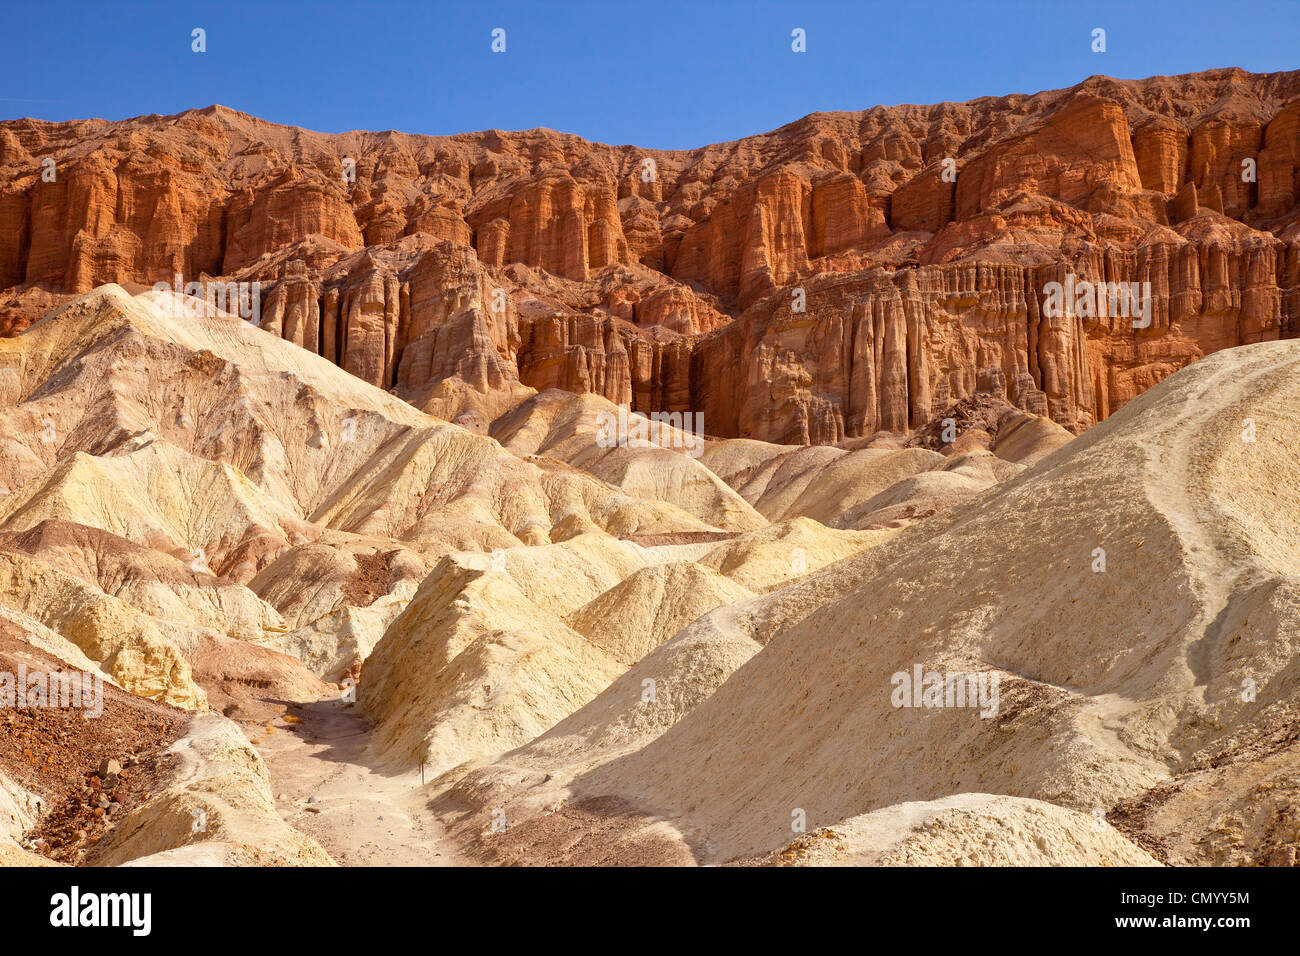 View through Golden Canyon, Death Valley National Park, California USA Stock Photo